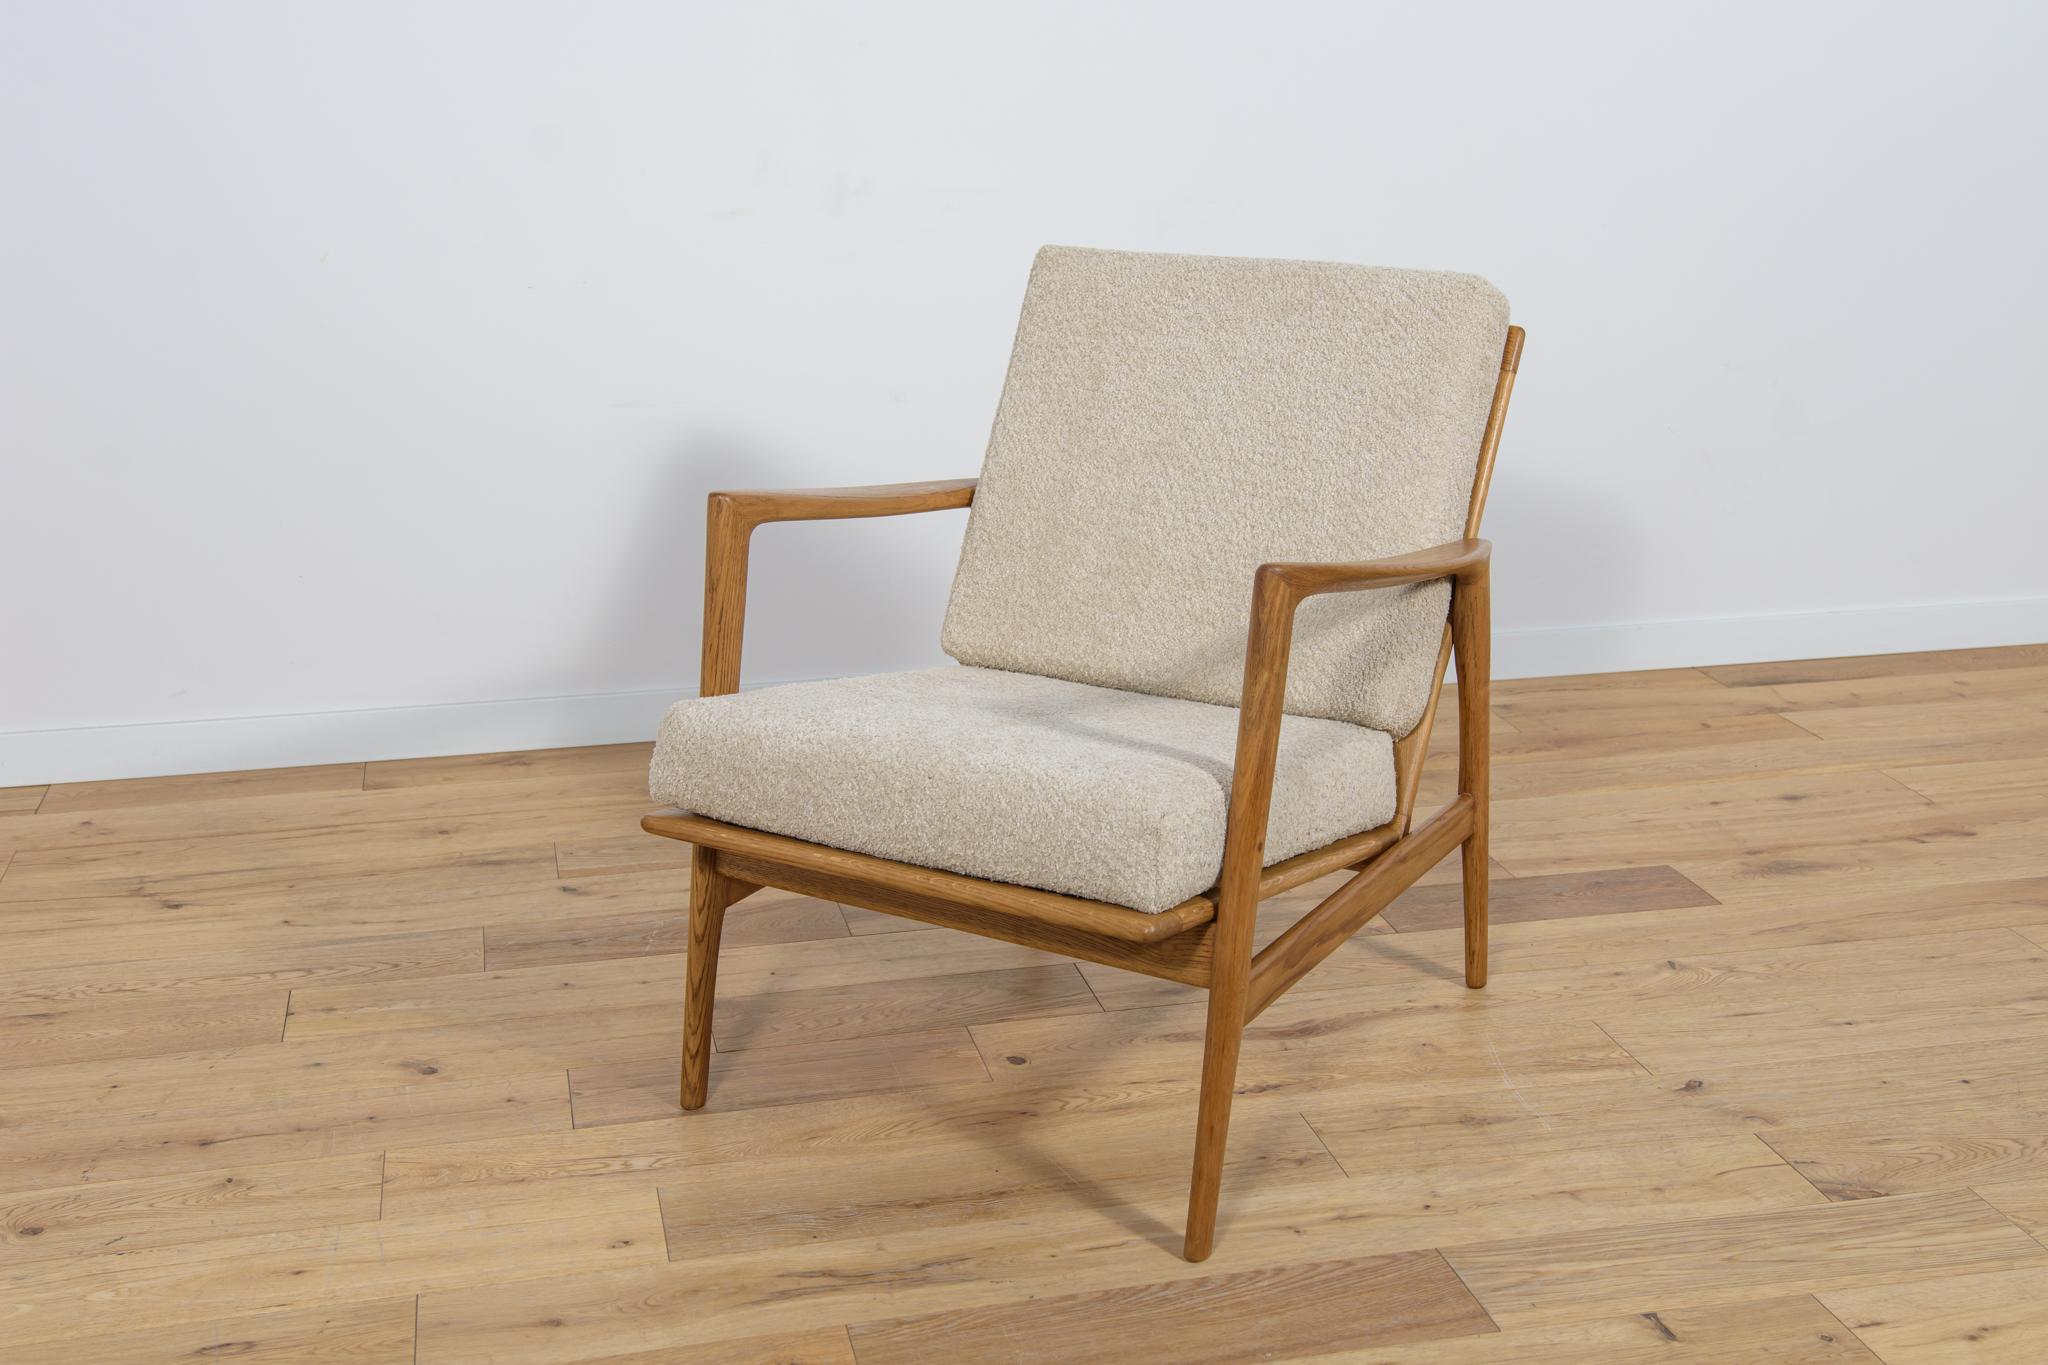 
Der Sessel Modell 300-139, der von der polnischen Firma Swarzędzka Furniture Factory hergestellt wurde. Bequemer Sessel mit einer einzigartigen Form. Die Sessel wurden professionell restauriert. Die Holzstruktur wurde gereinigt und mit einem